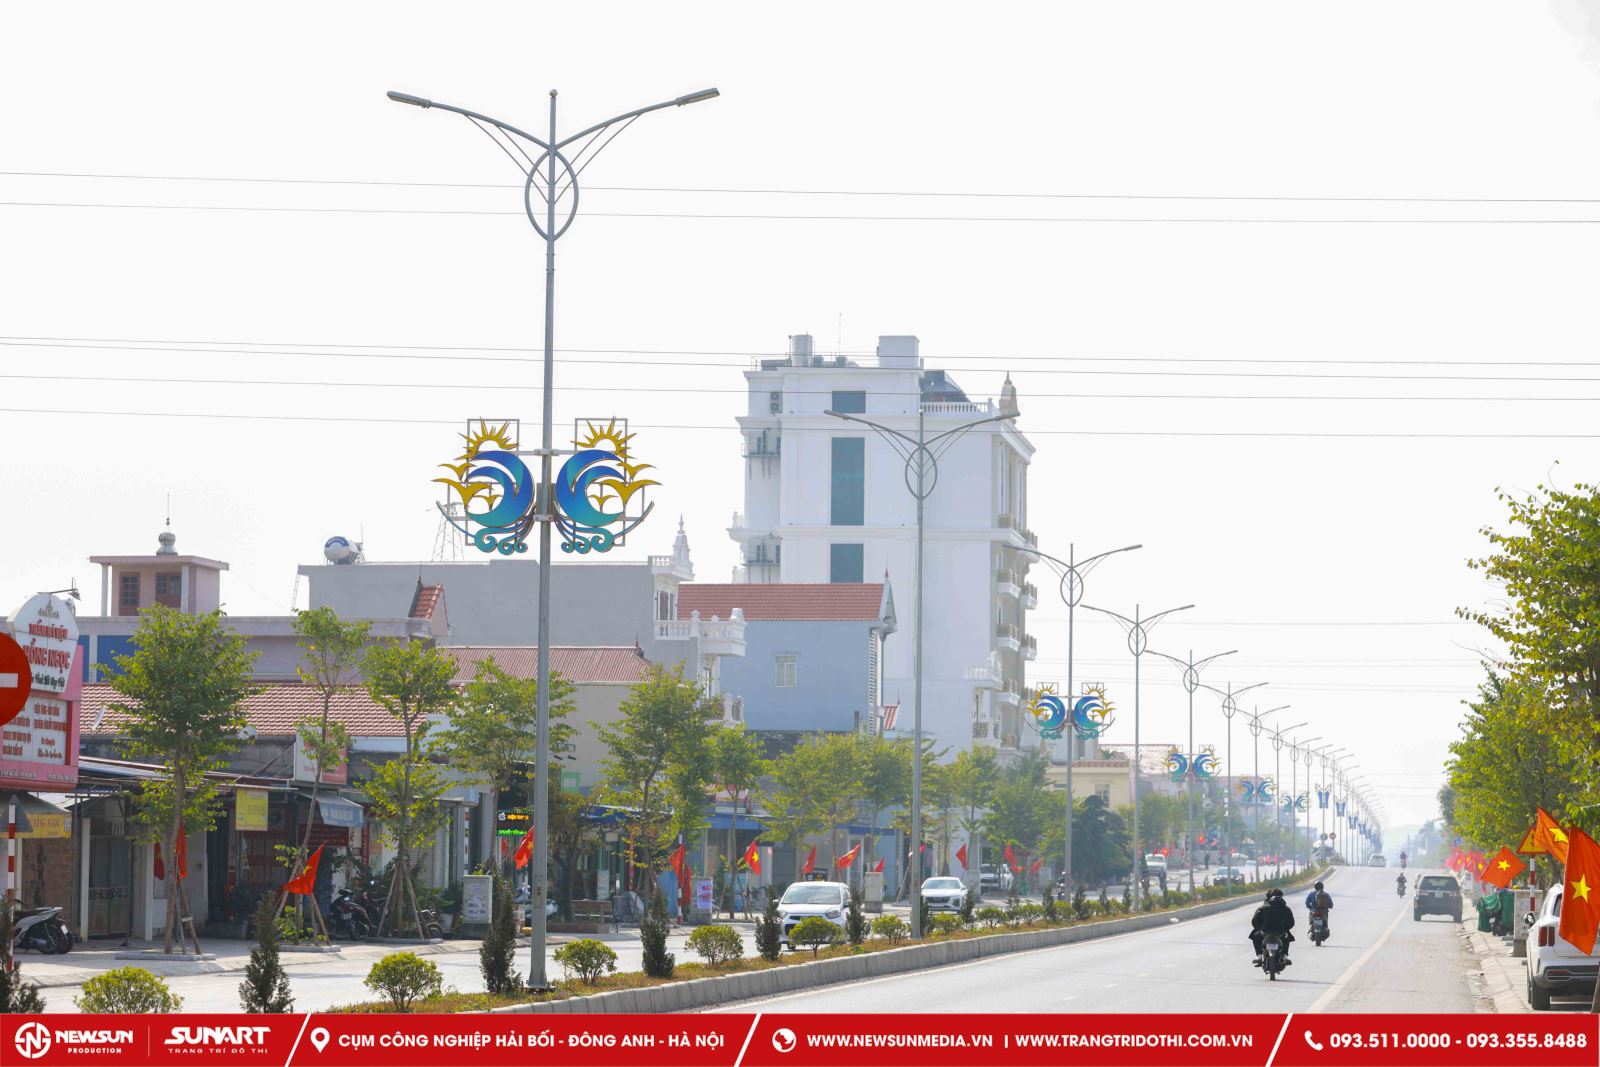 dự án trang trí đường phố tại huyện Thủy Nguyên, Hải Phòng được thiết kế và thi công bởi công ty trang trí đô thị Sunart.